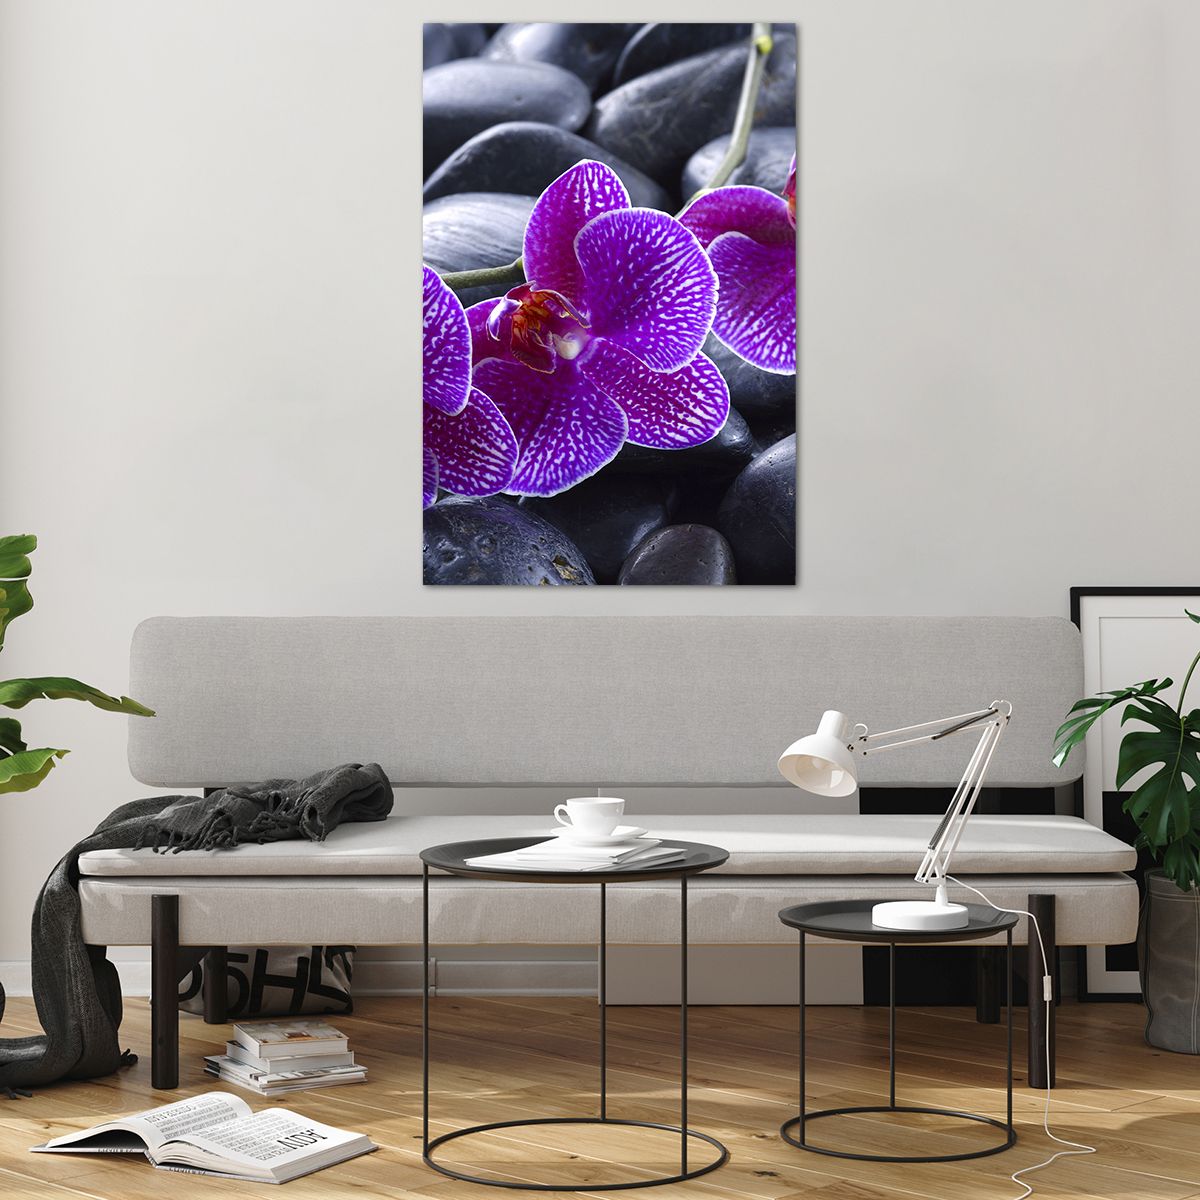 Bilder auf glas Blumen, Bilder auf glas Steine, Bilder auf glas Orchidee, Bilder auf glas Orchidee, Bilder auf glas Spa